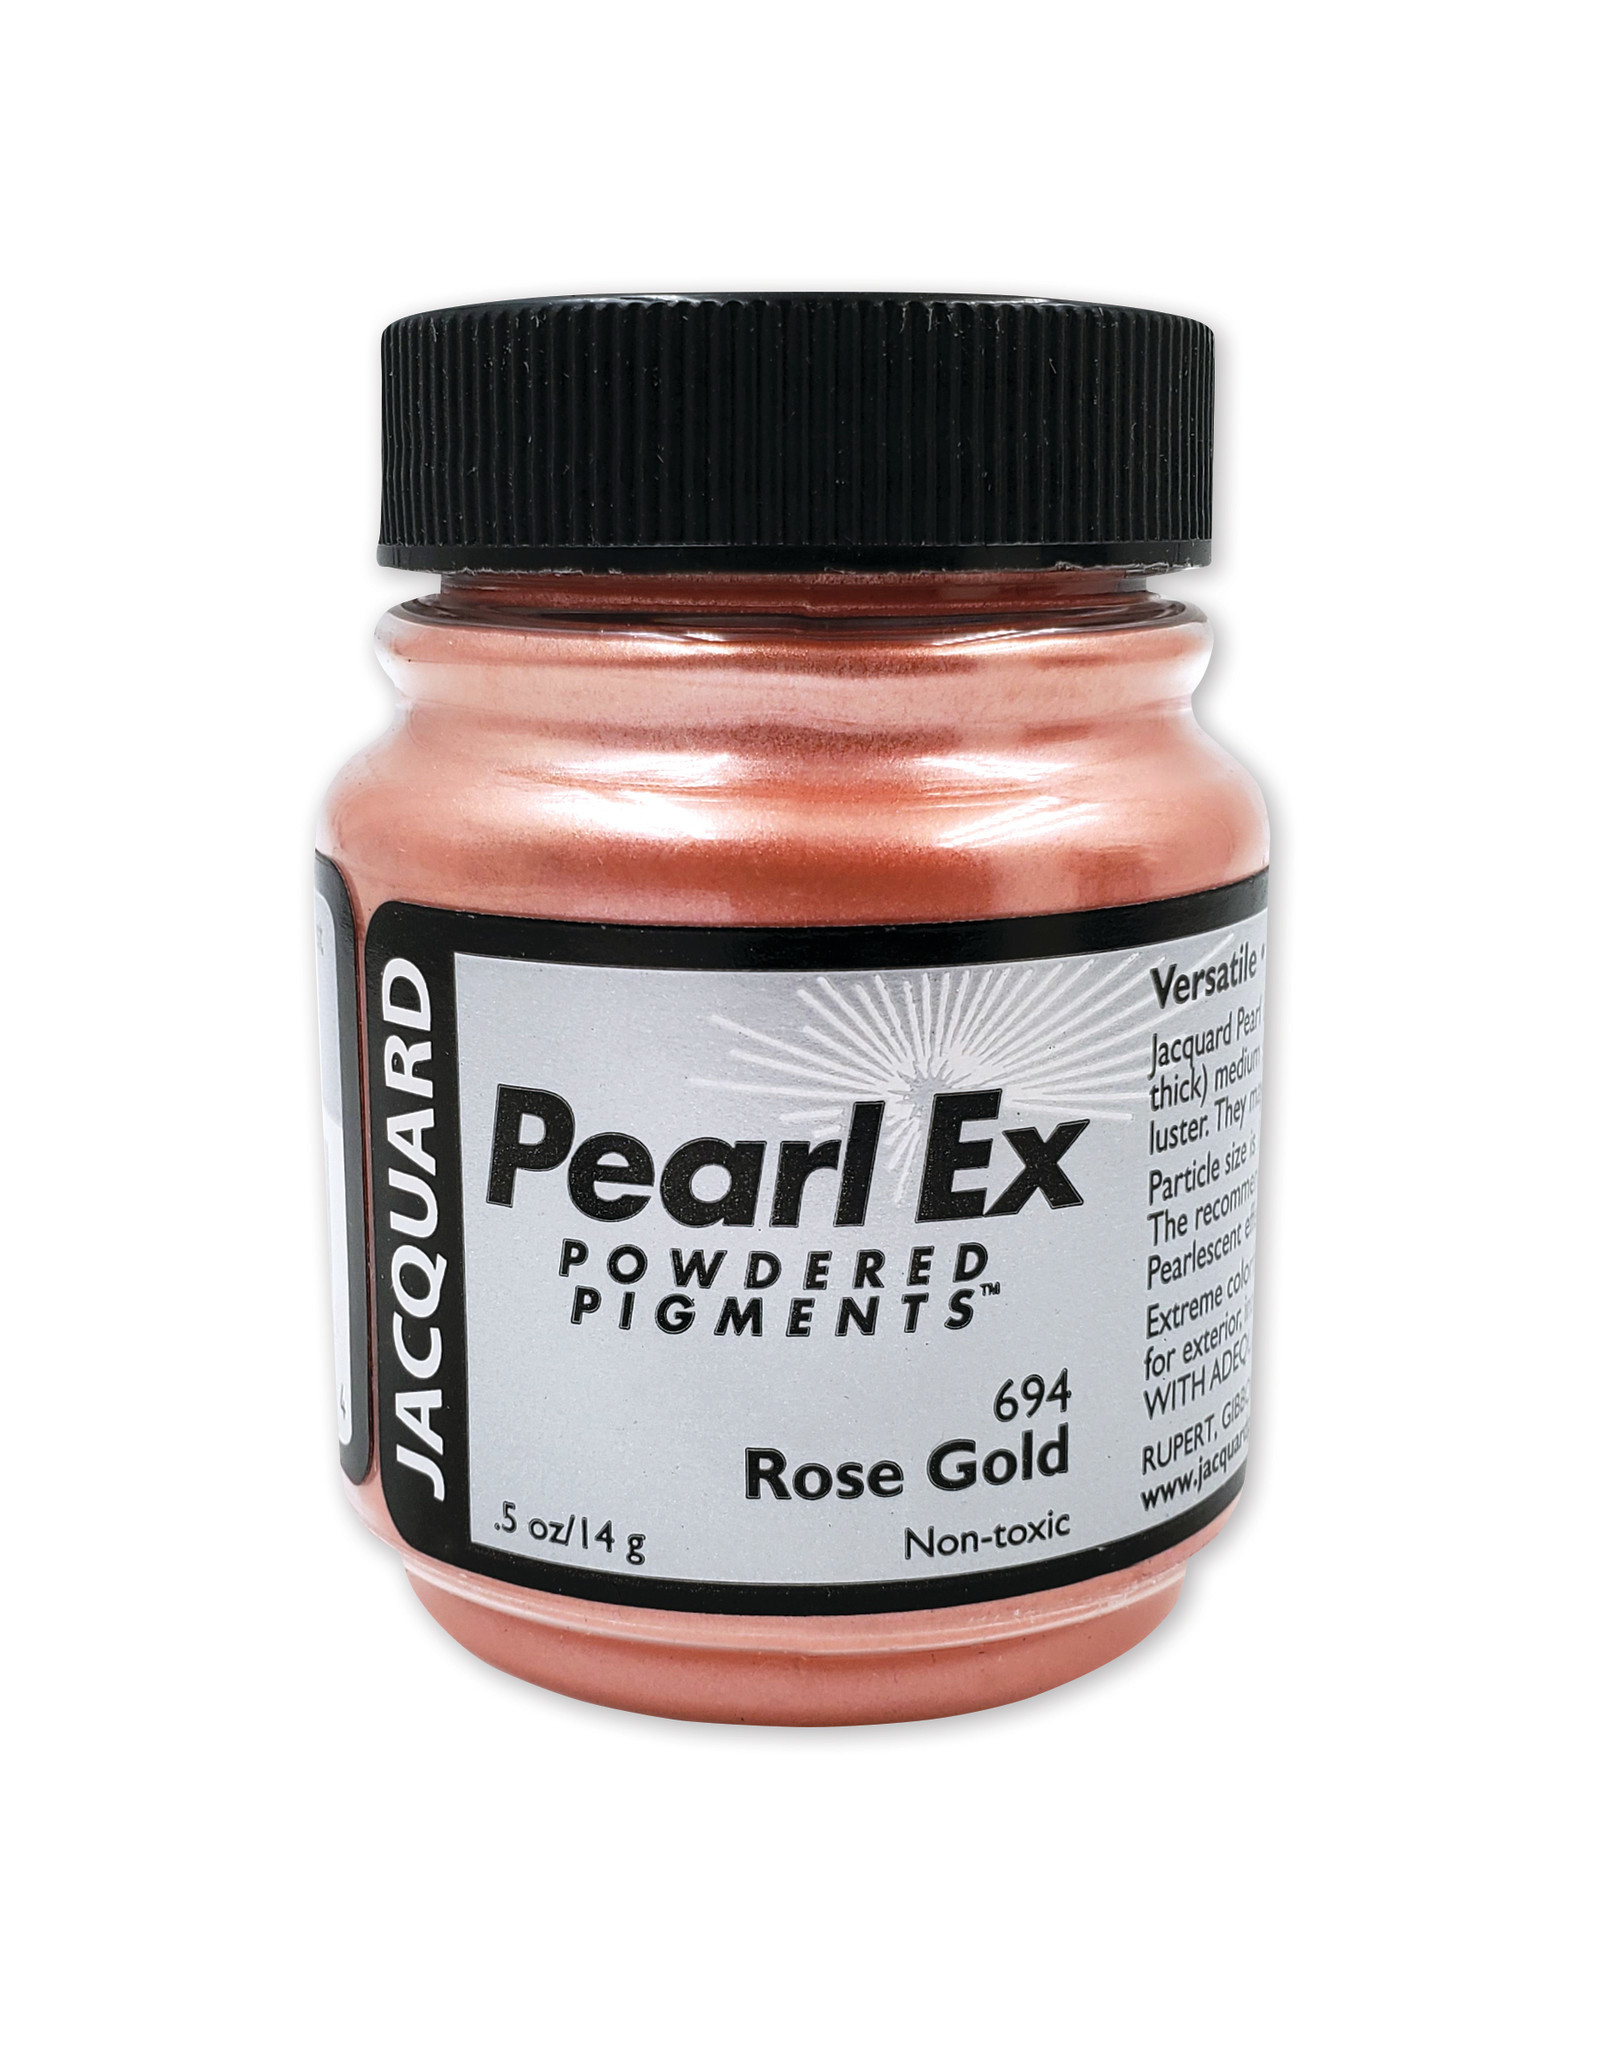 Jacquard Jacquard Pearl Ex, Rose Gold #694 1/2oz